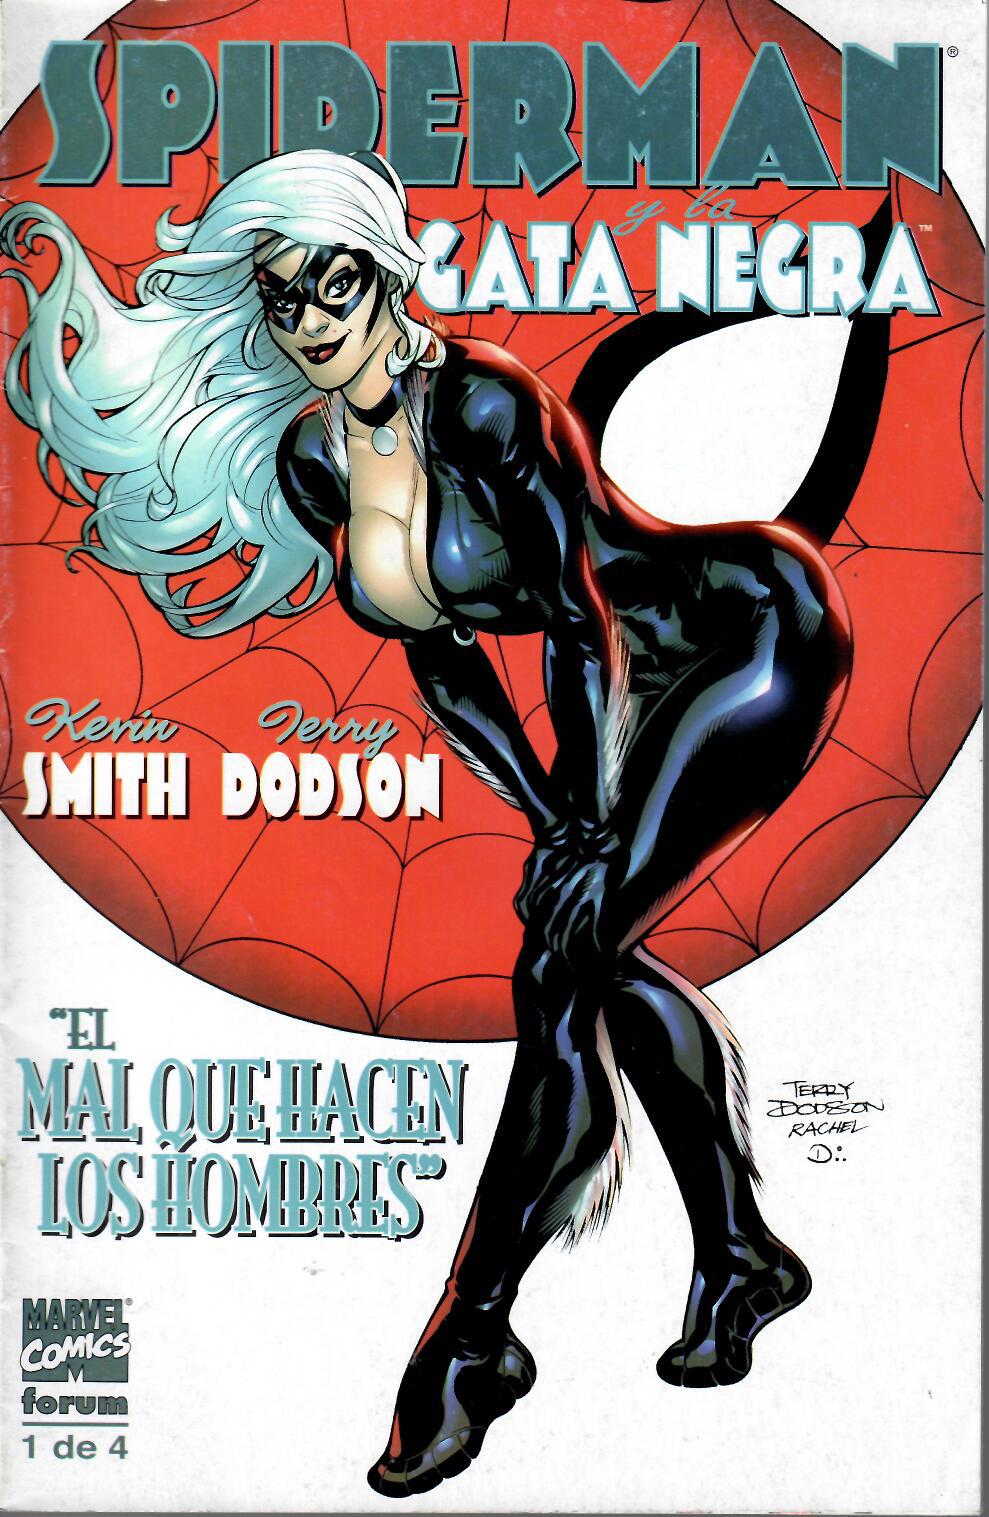 Spiderman y La Gata Negra. El mal que hacen los hombres. Forum 2003. Nº 1